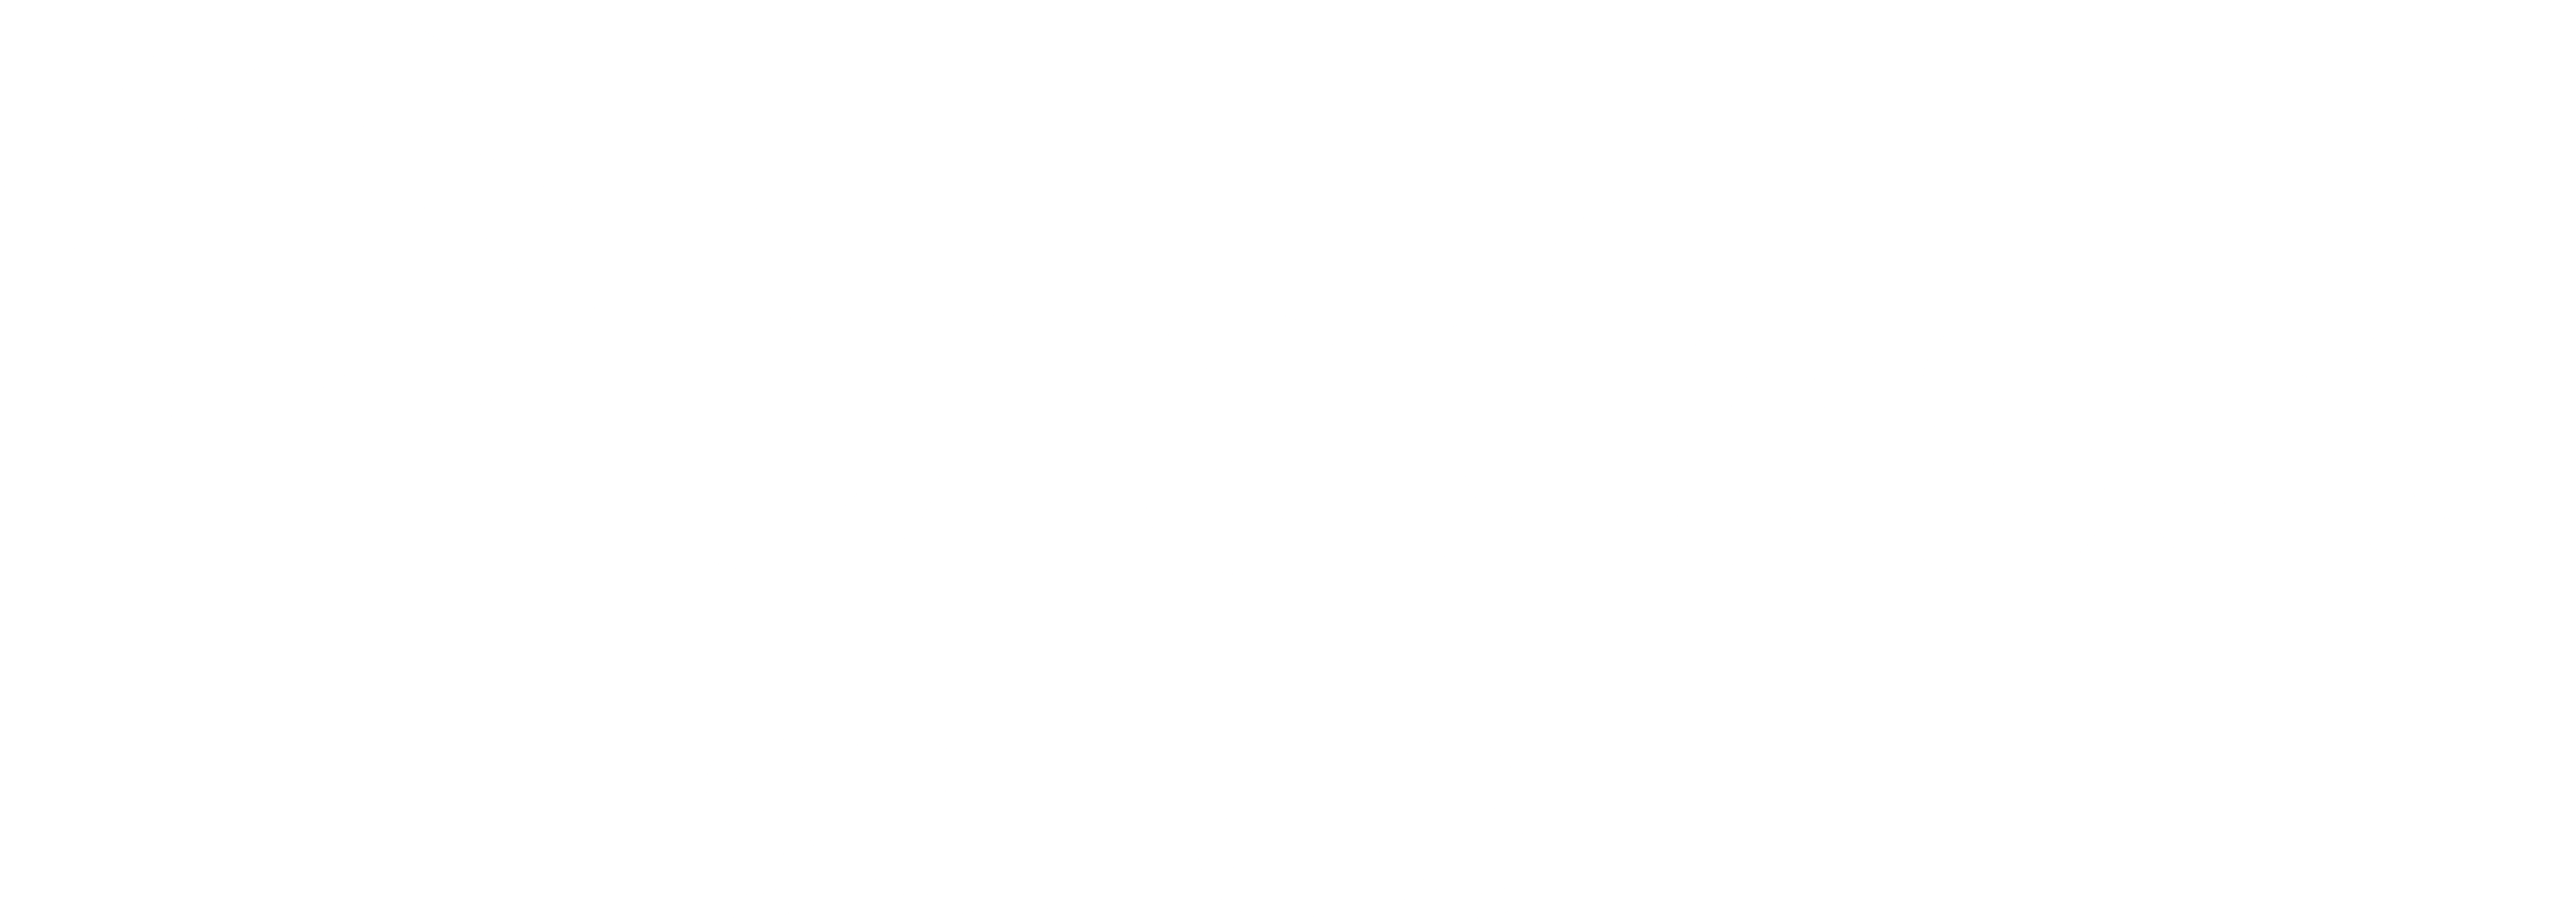 bradesco-saude-logo-1-1-cópia